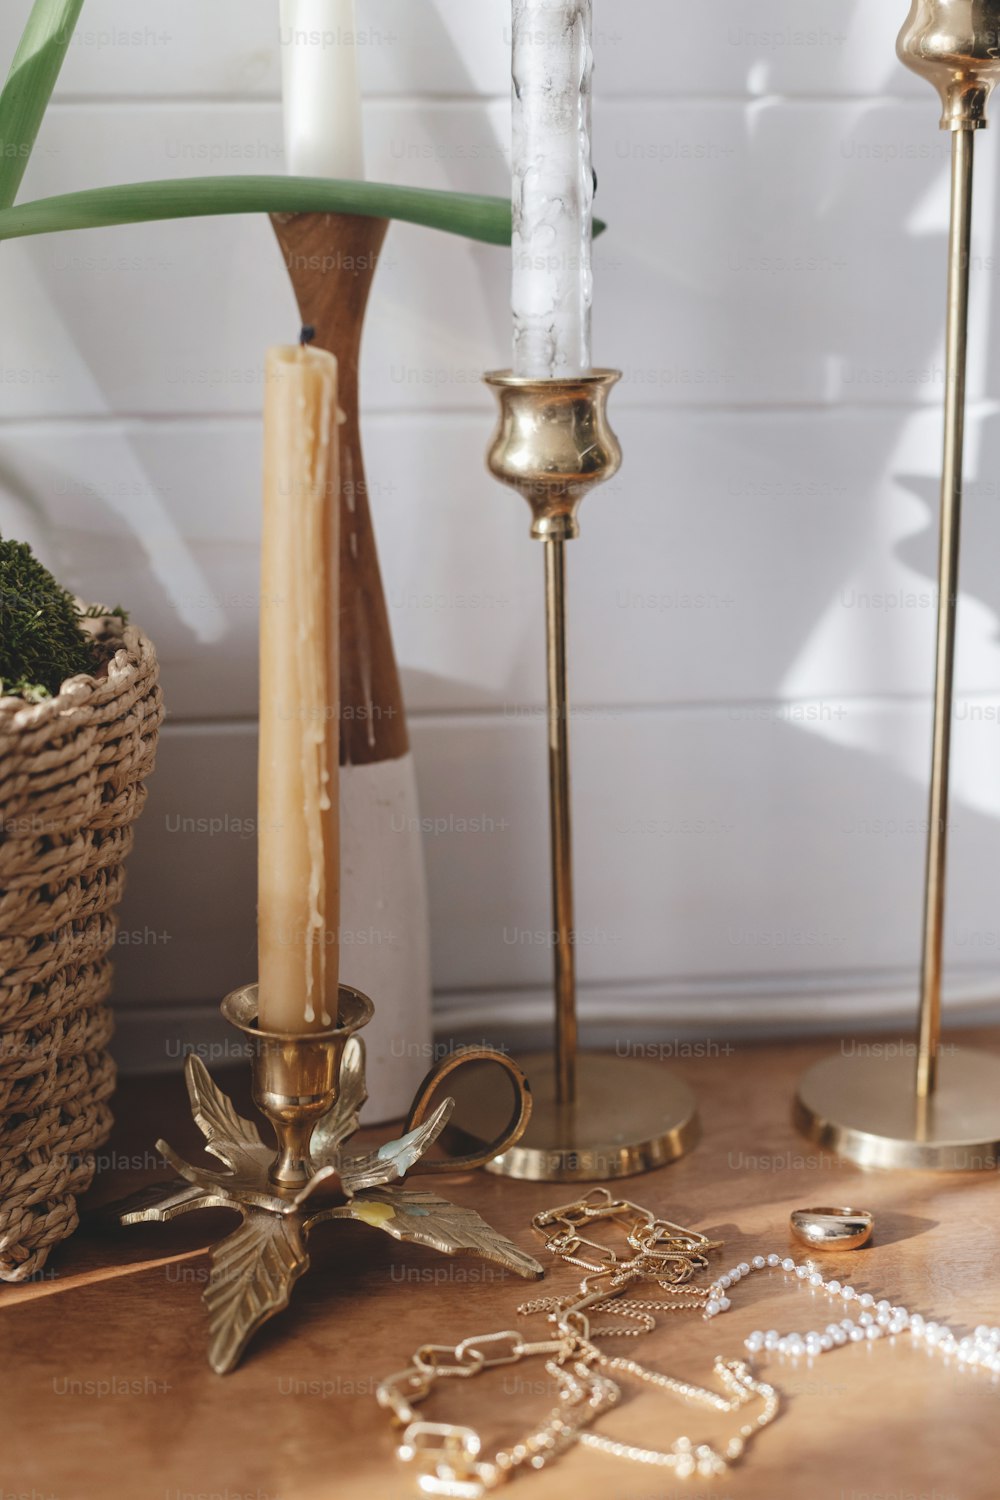 Accesorios modernos de oro y perlas sobre mesa con candelabros vintage. Elegante collar dorado y anillo sobre fondo de madera a la luz del sol.